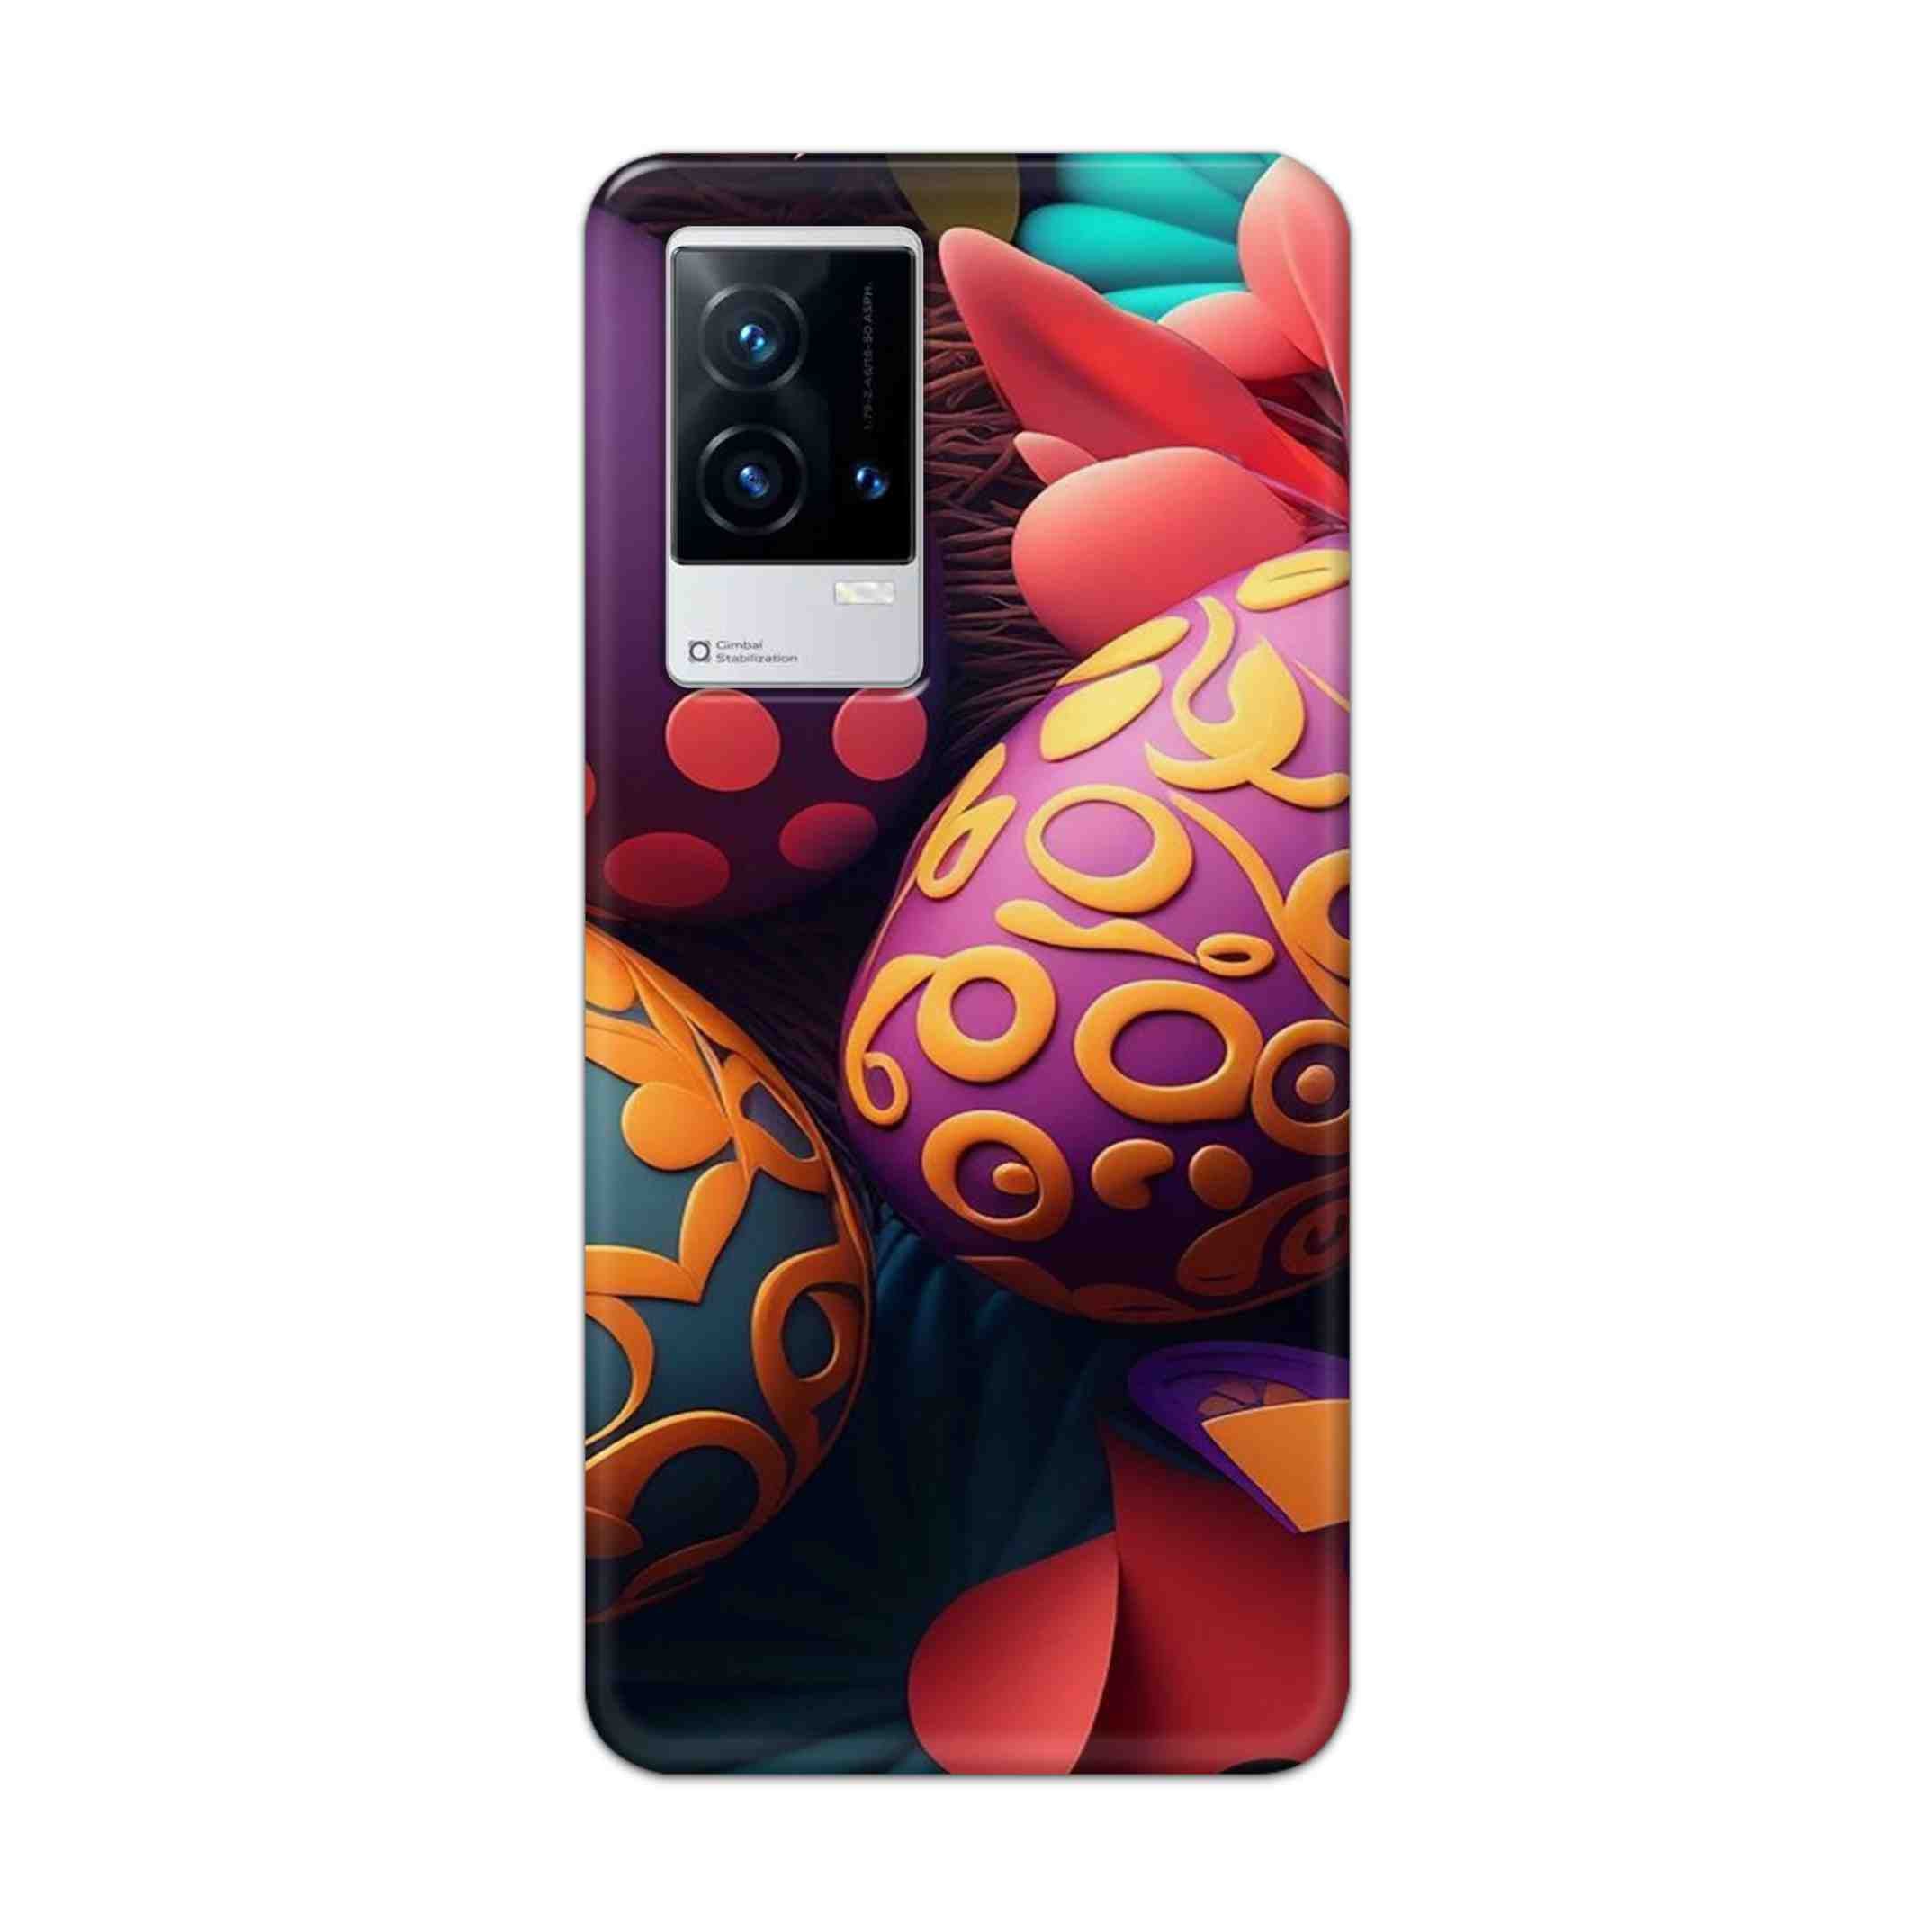 Buy Easter Egg Hard Back Mobile Phone Case Cover For Vivo iQOO 9 5G Online